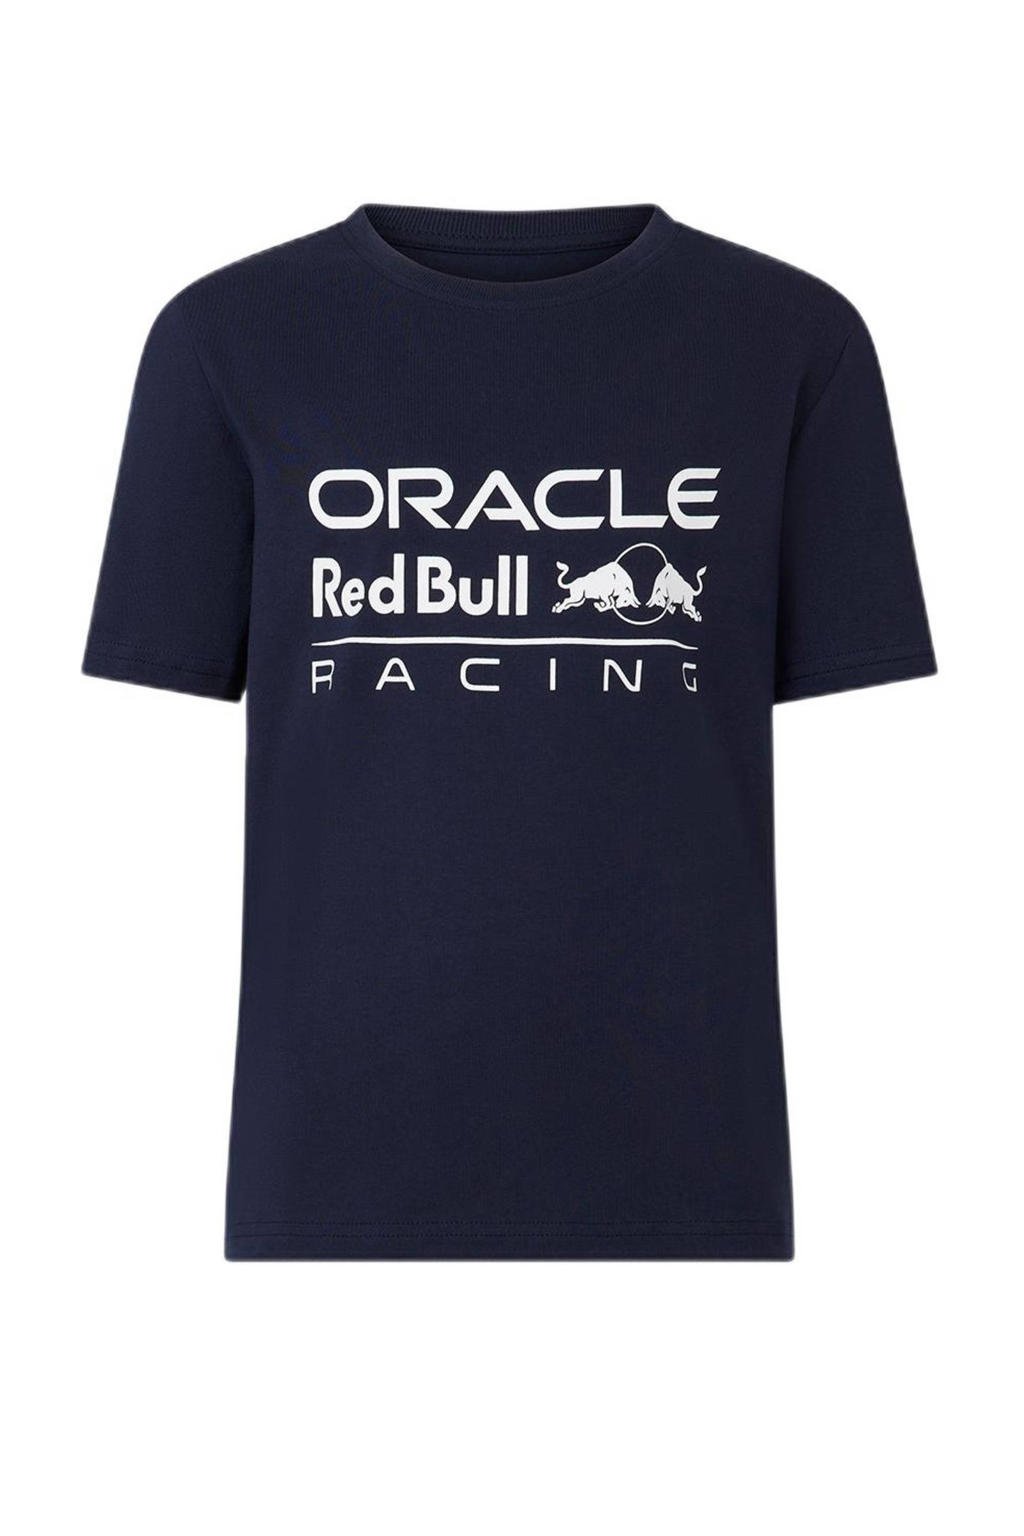 Blauwe jongens en meisjes Castore Red Bull Racing T-shirt met logo dessin, korte mouwen en ronde hals